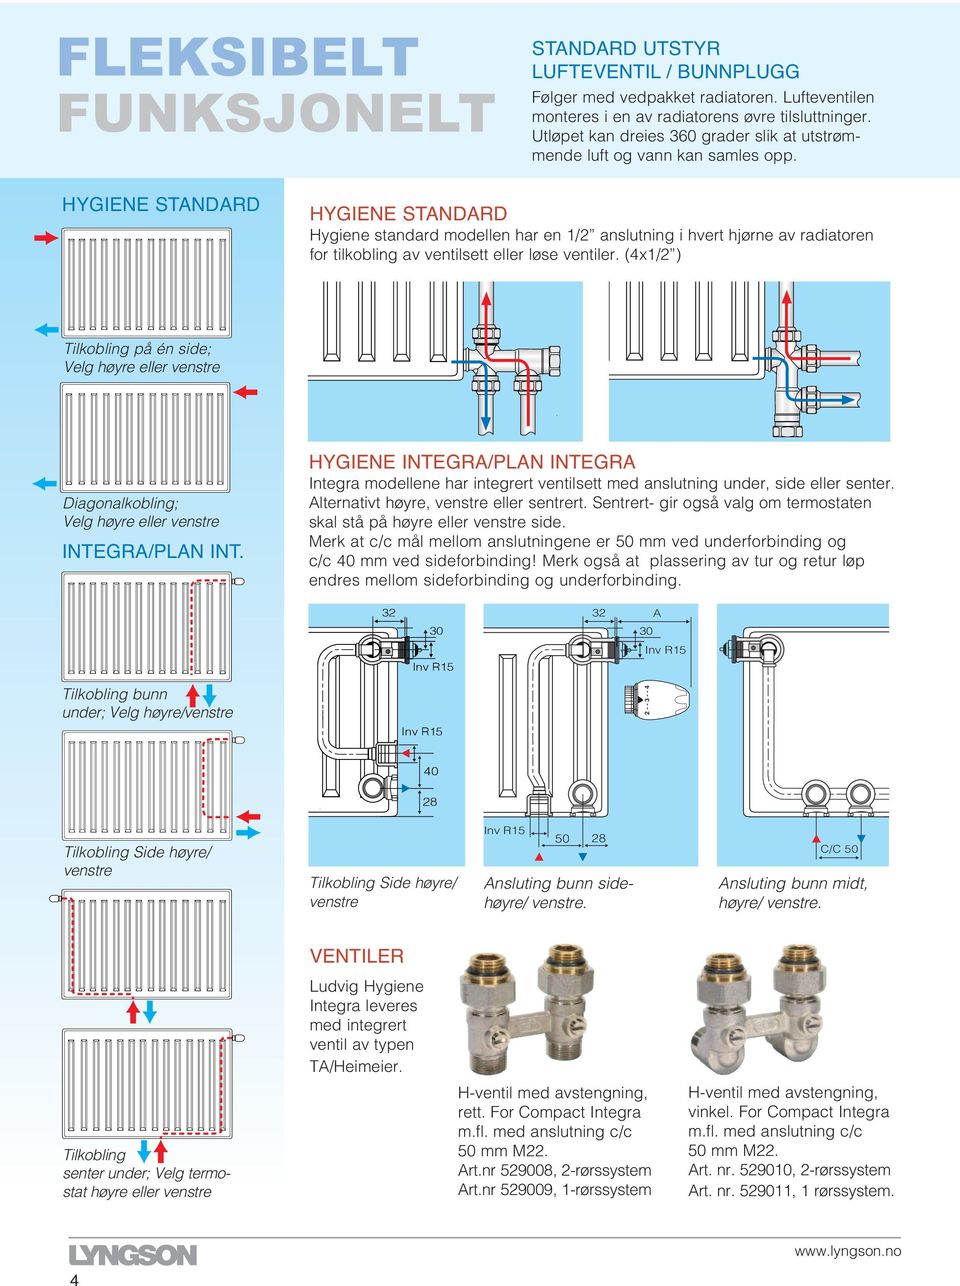 STANDARD STANDARD ygiene standard modellen har en 1/2 anslutning i hvert hjørne av radiatoren for tilkobling av ventilsett eller løse ventiler.